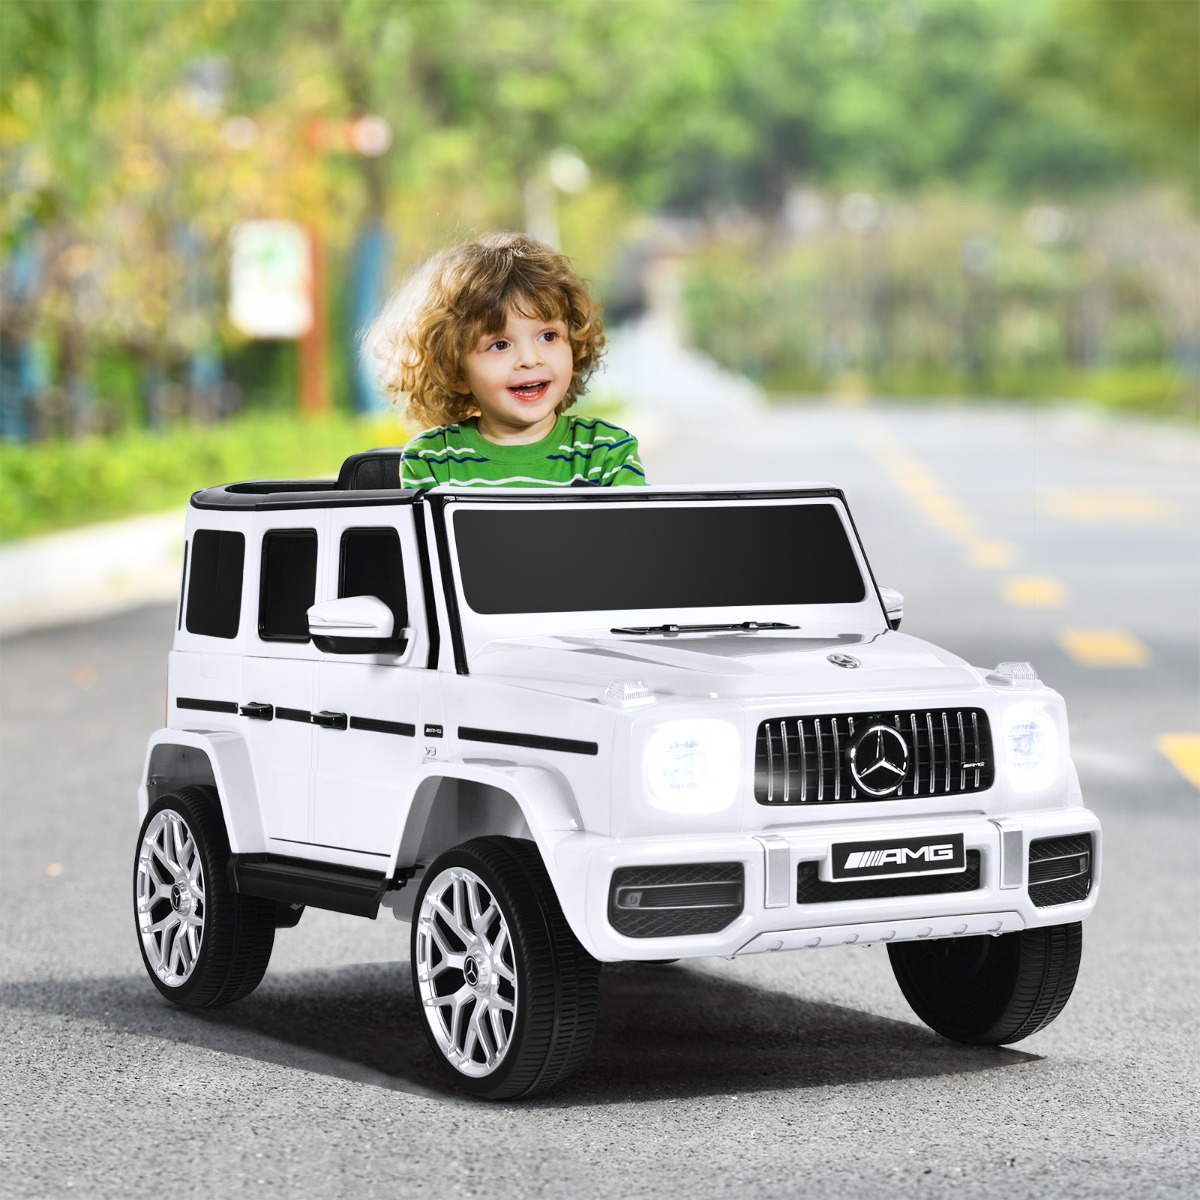 Costway Mercedes-Benz G63 elettrica per bambini con licenza, Macchina giocattolo per bambini 12V con telecomando luci Bianco